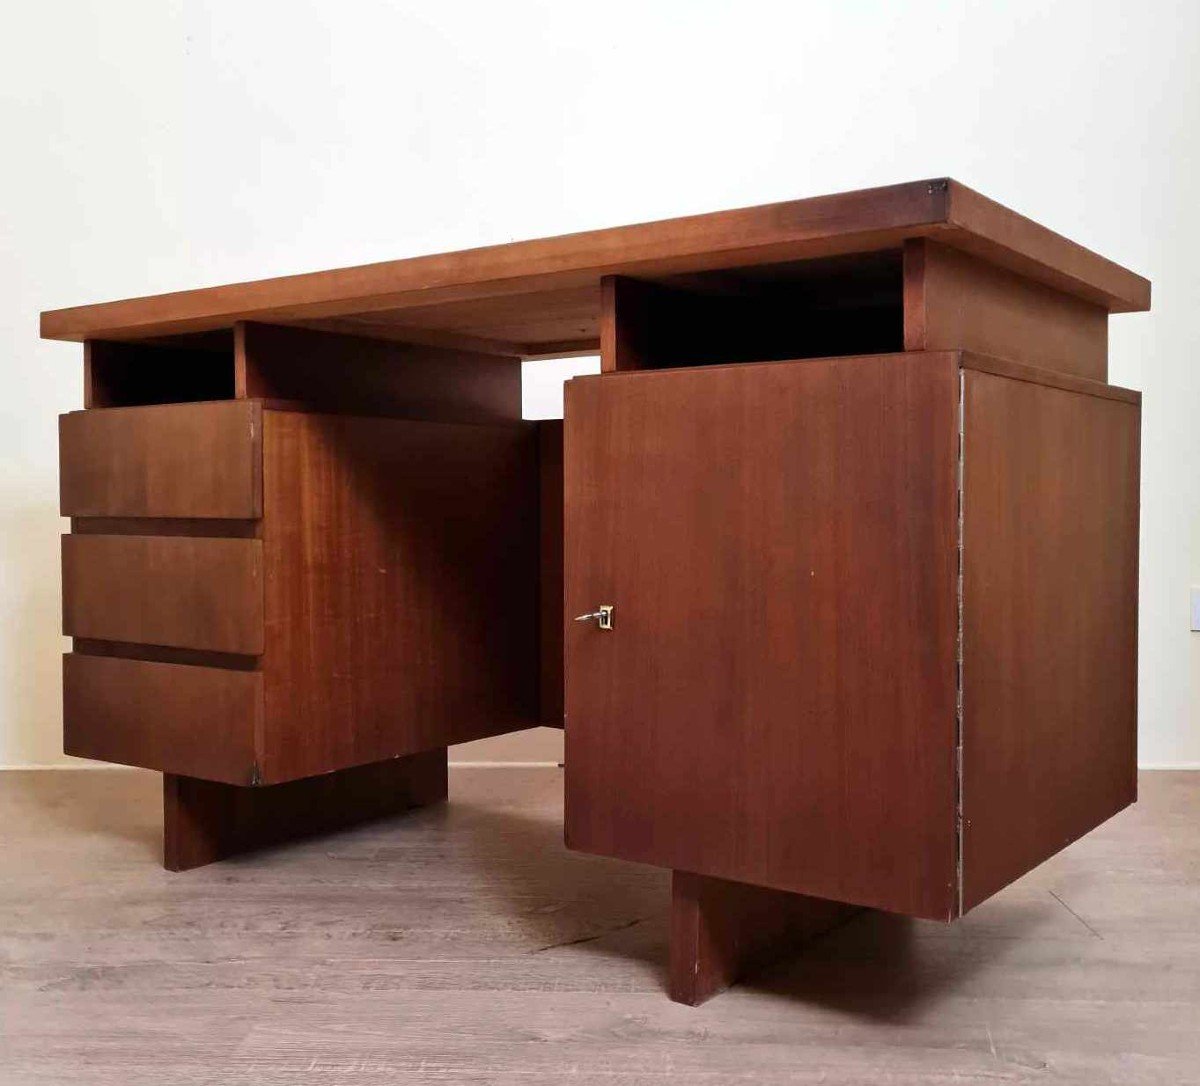 Beautiful Scandinavian Center Desk In Teak With A Beautiful Original Patina Circa 1960